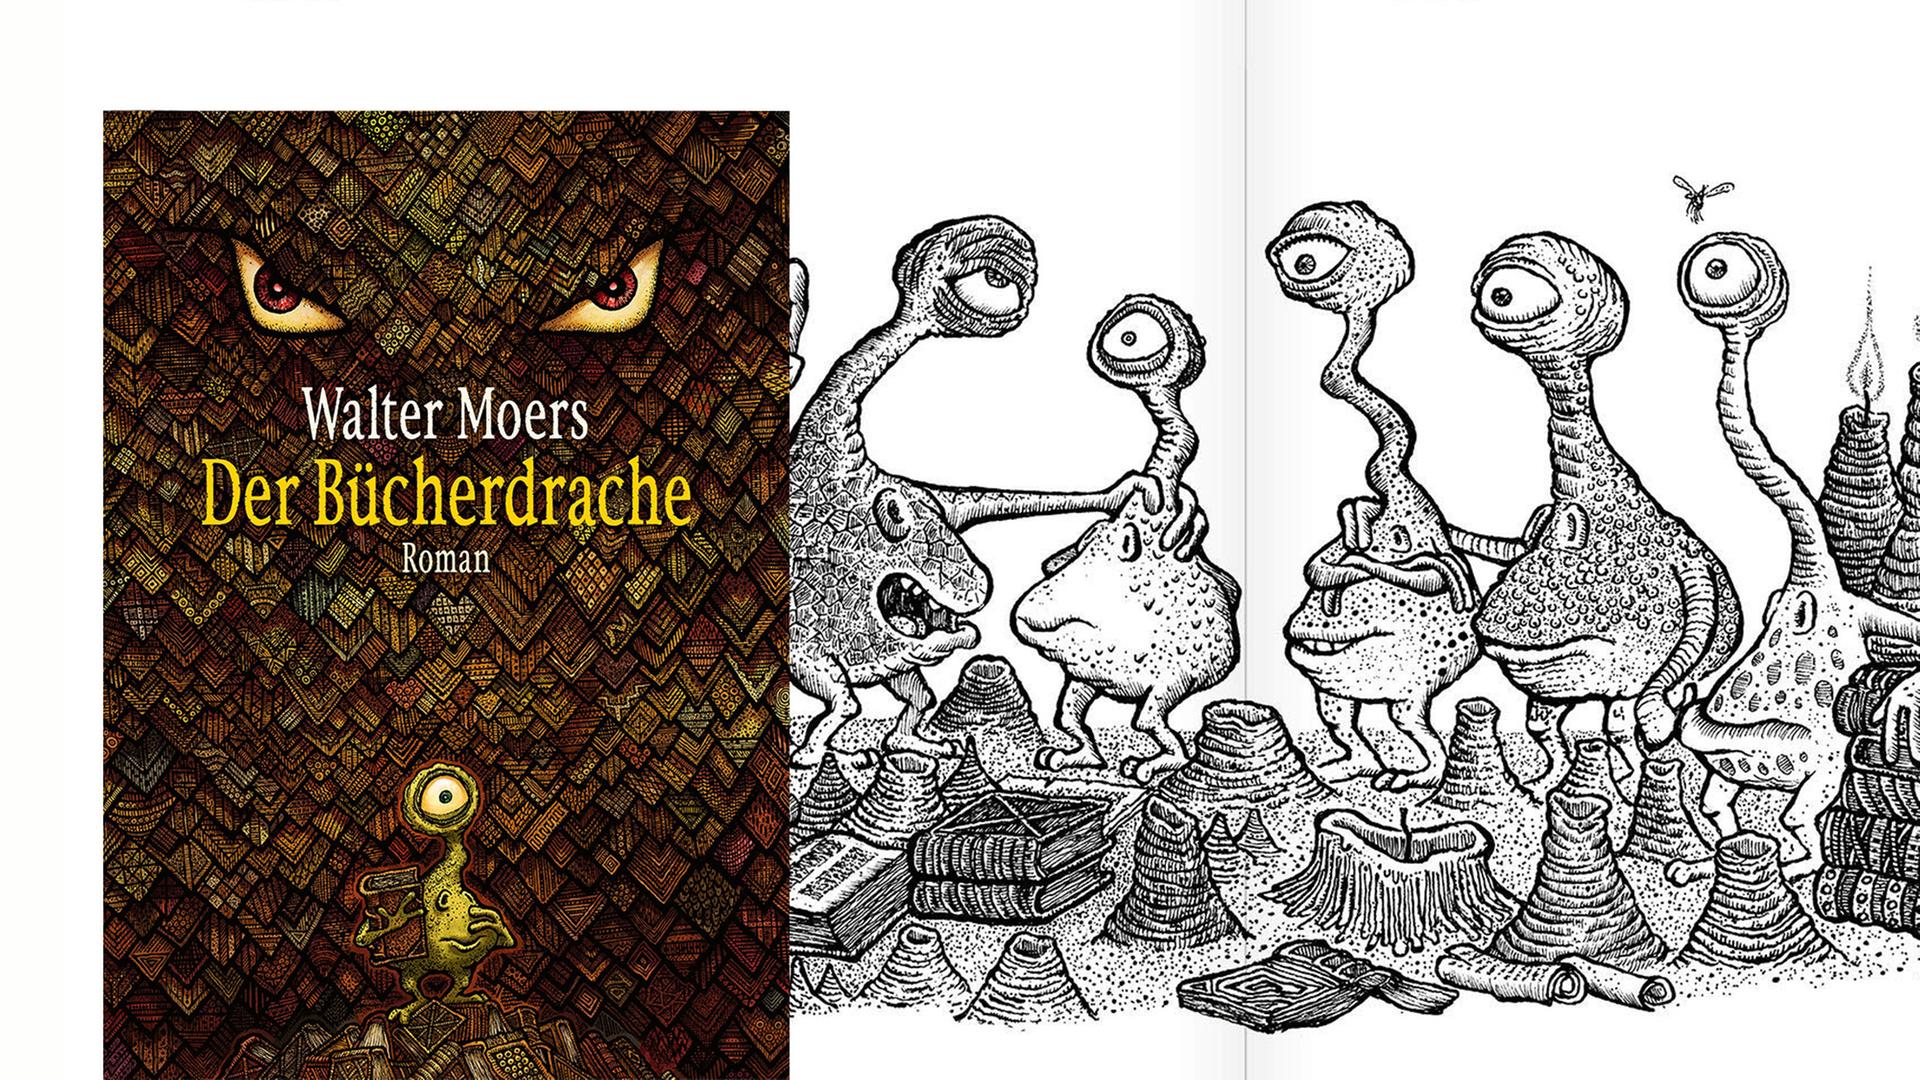 Cover von Walter Moers Buch "Der Bücherdrache". Im Hintergrund ist eine Illustration aus dem Buch zu sehen, die eine Gruppe von Buchlingen zeigt.